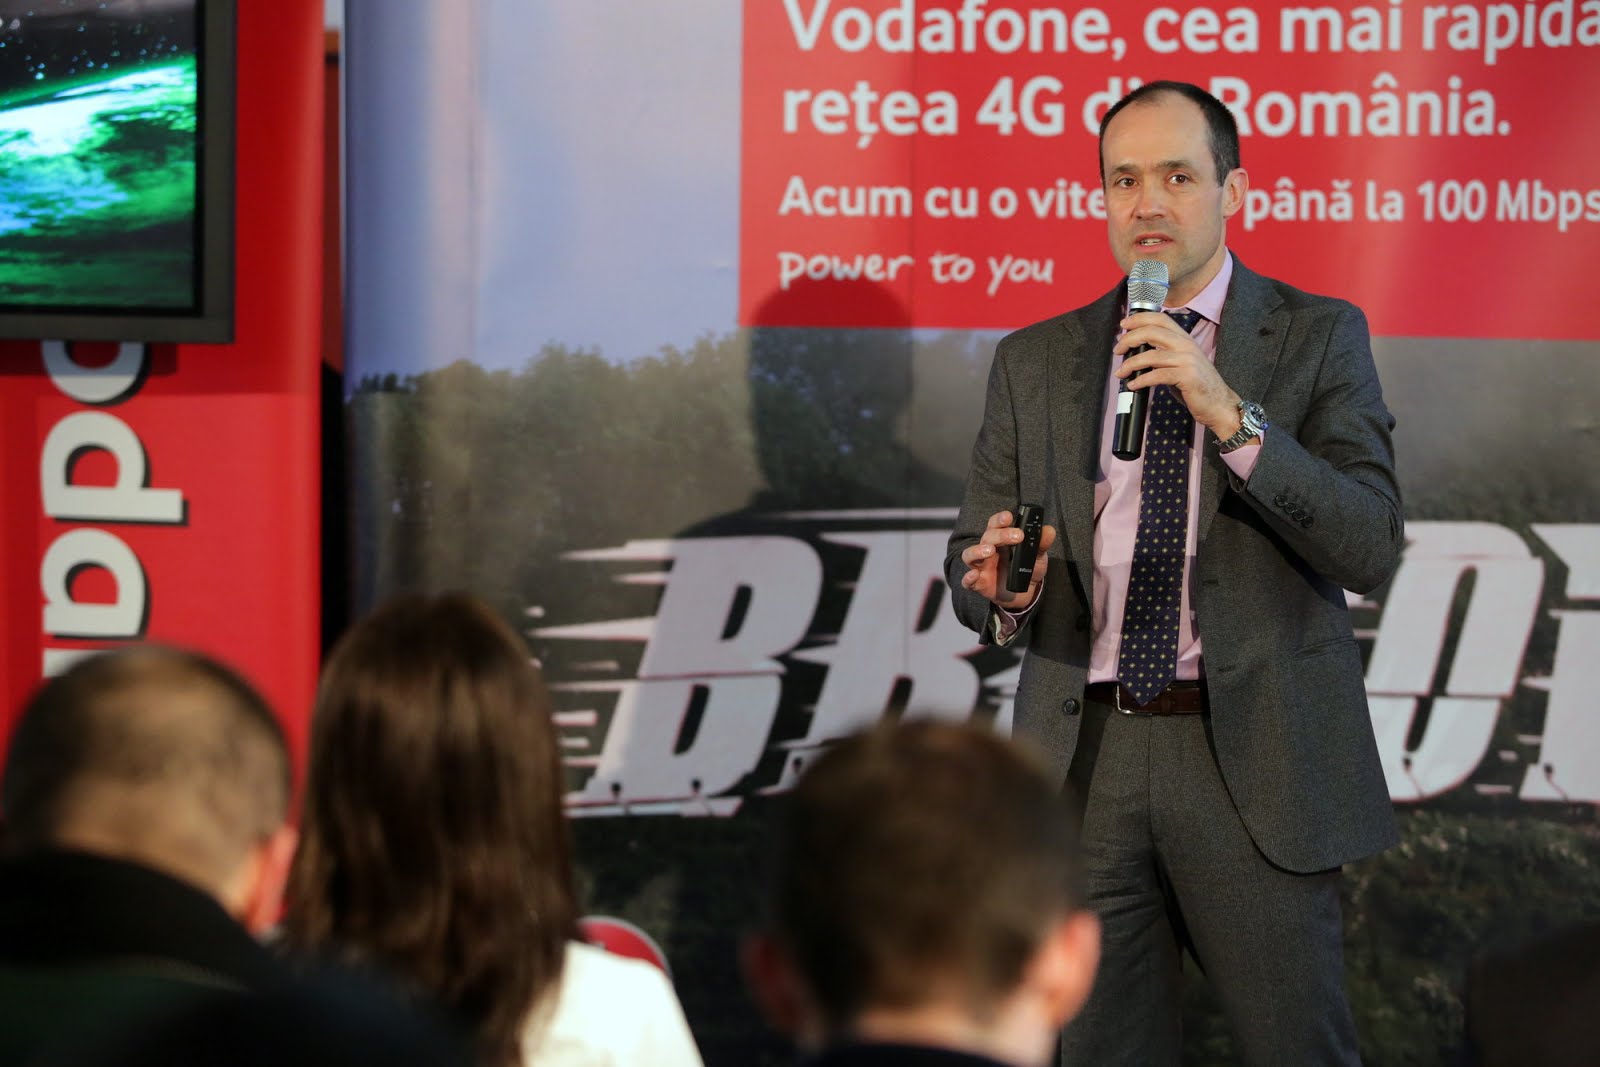 Iñaki Berroeta, seful Vodafone Romania va parasi compania de la 1 martie